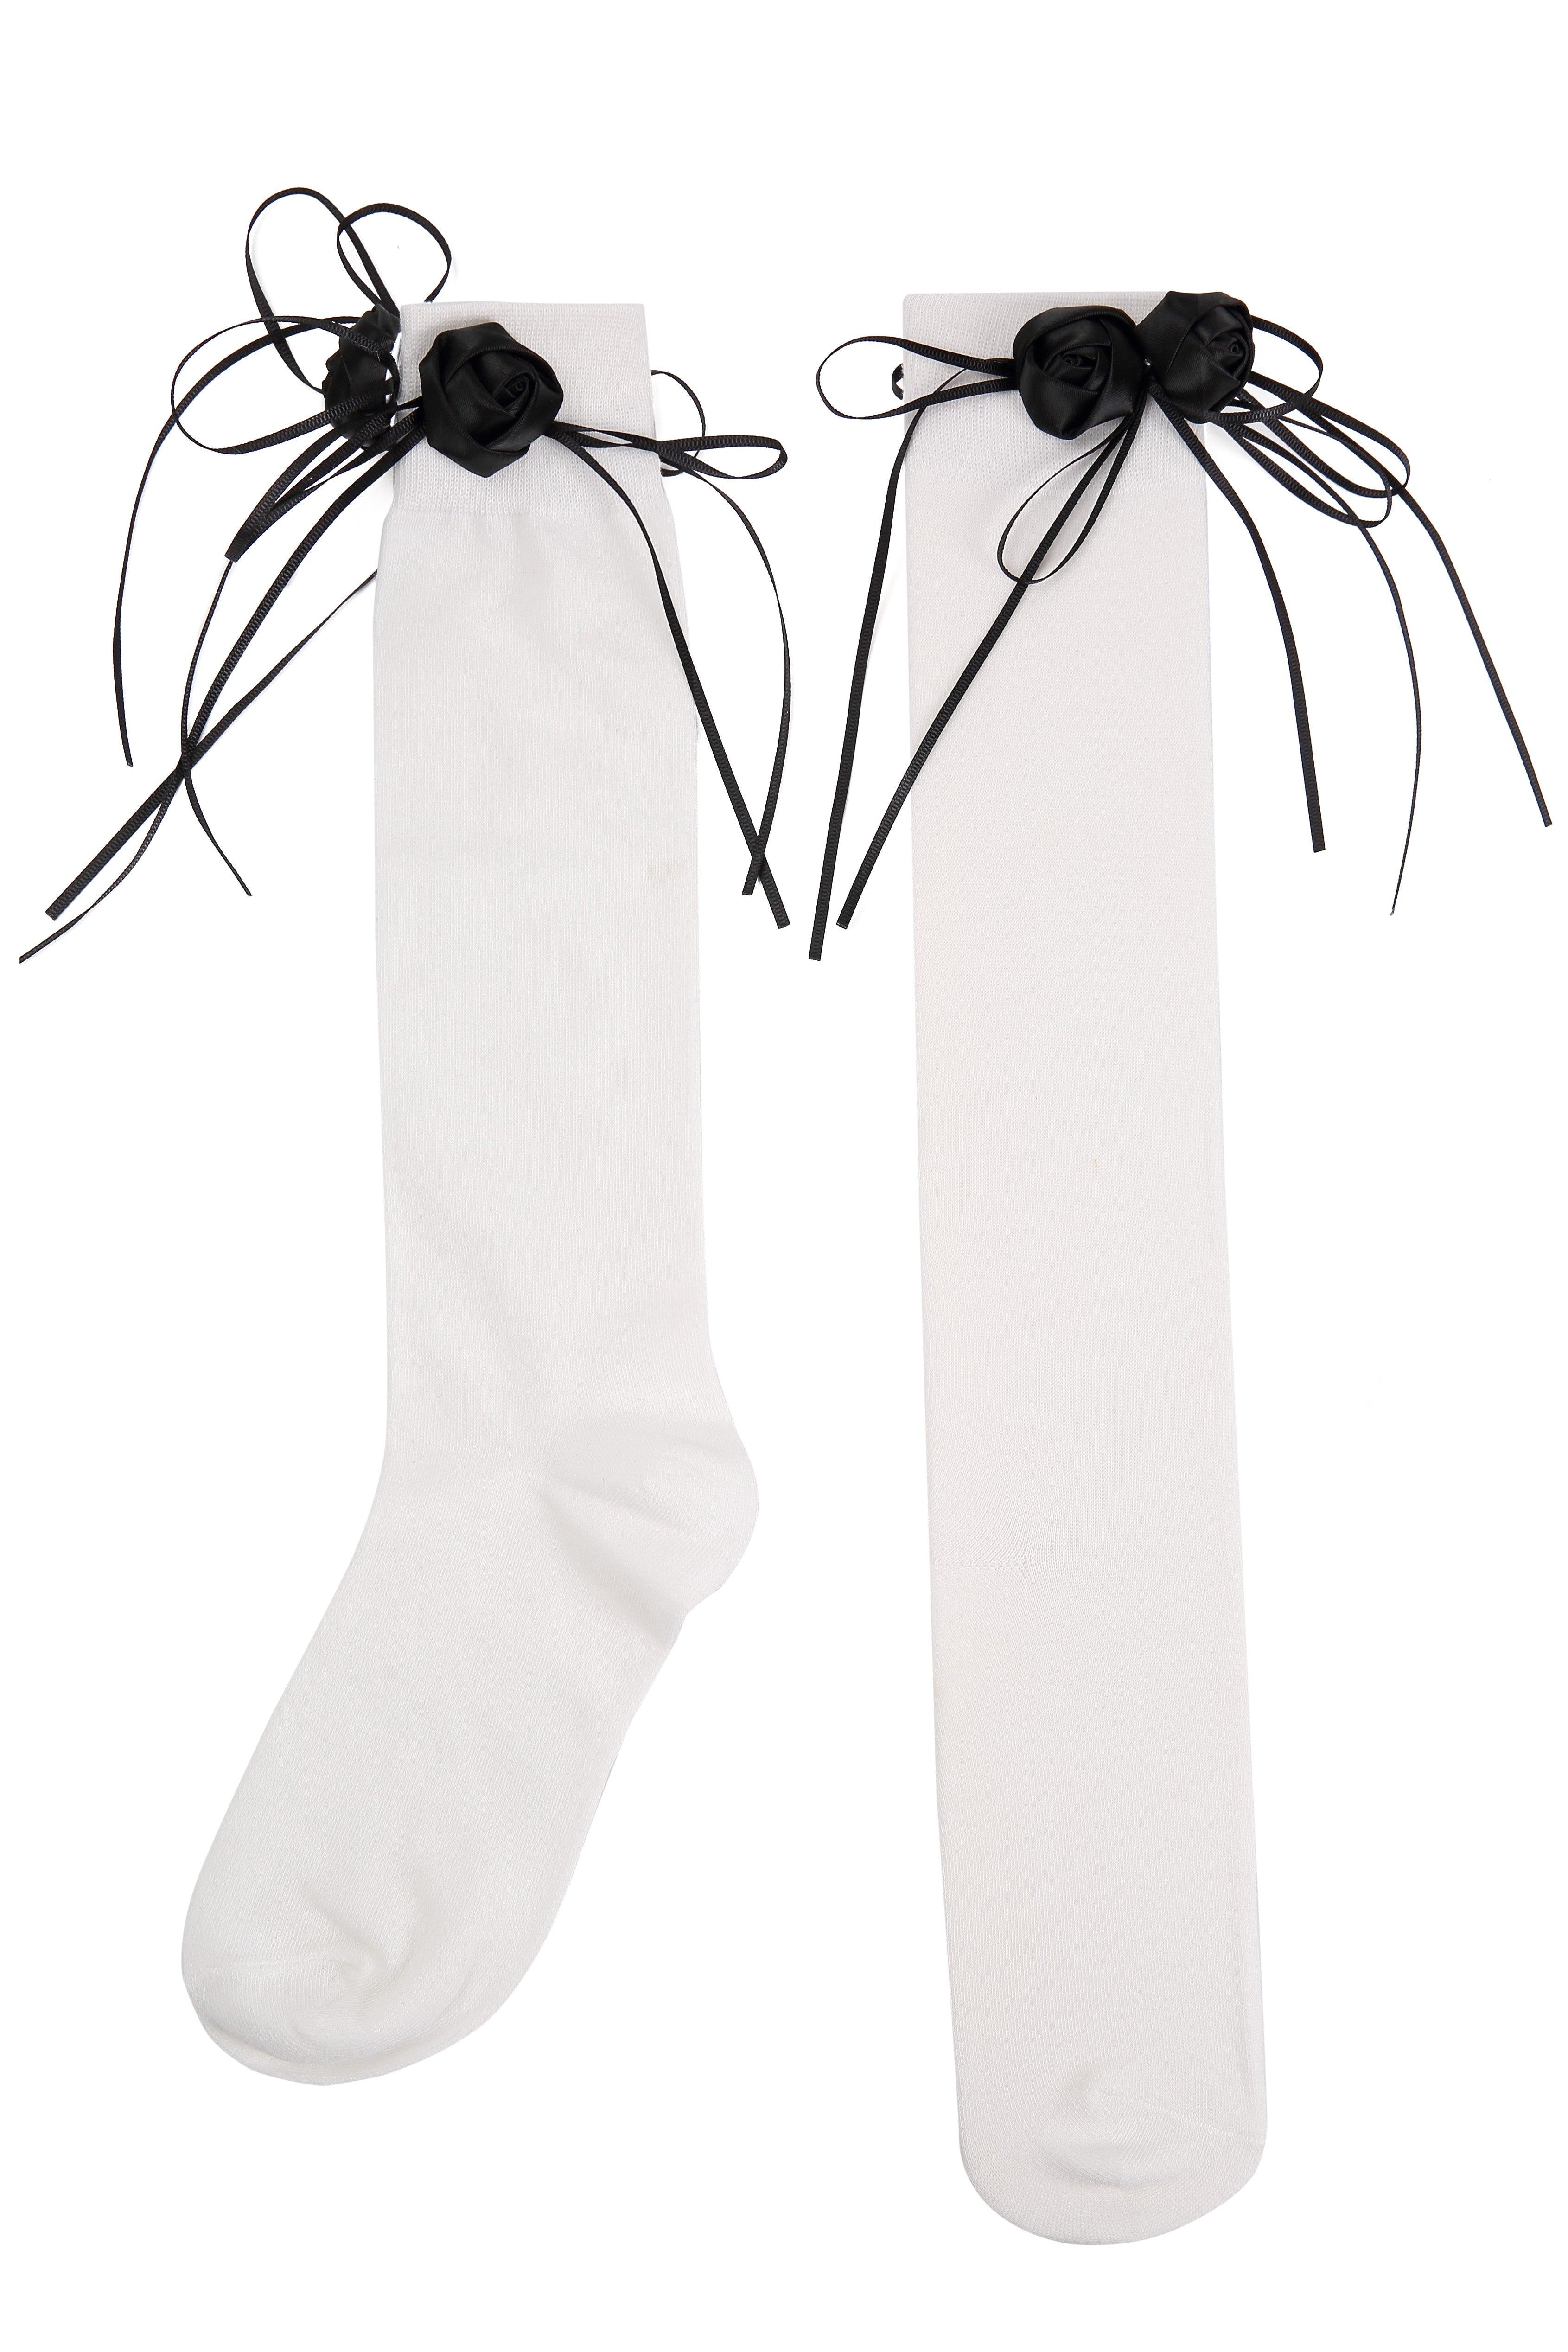 Handmade Flower Bud White Cotton Long Socks - Uniqvibe